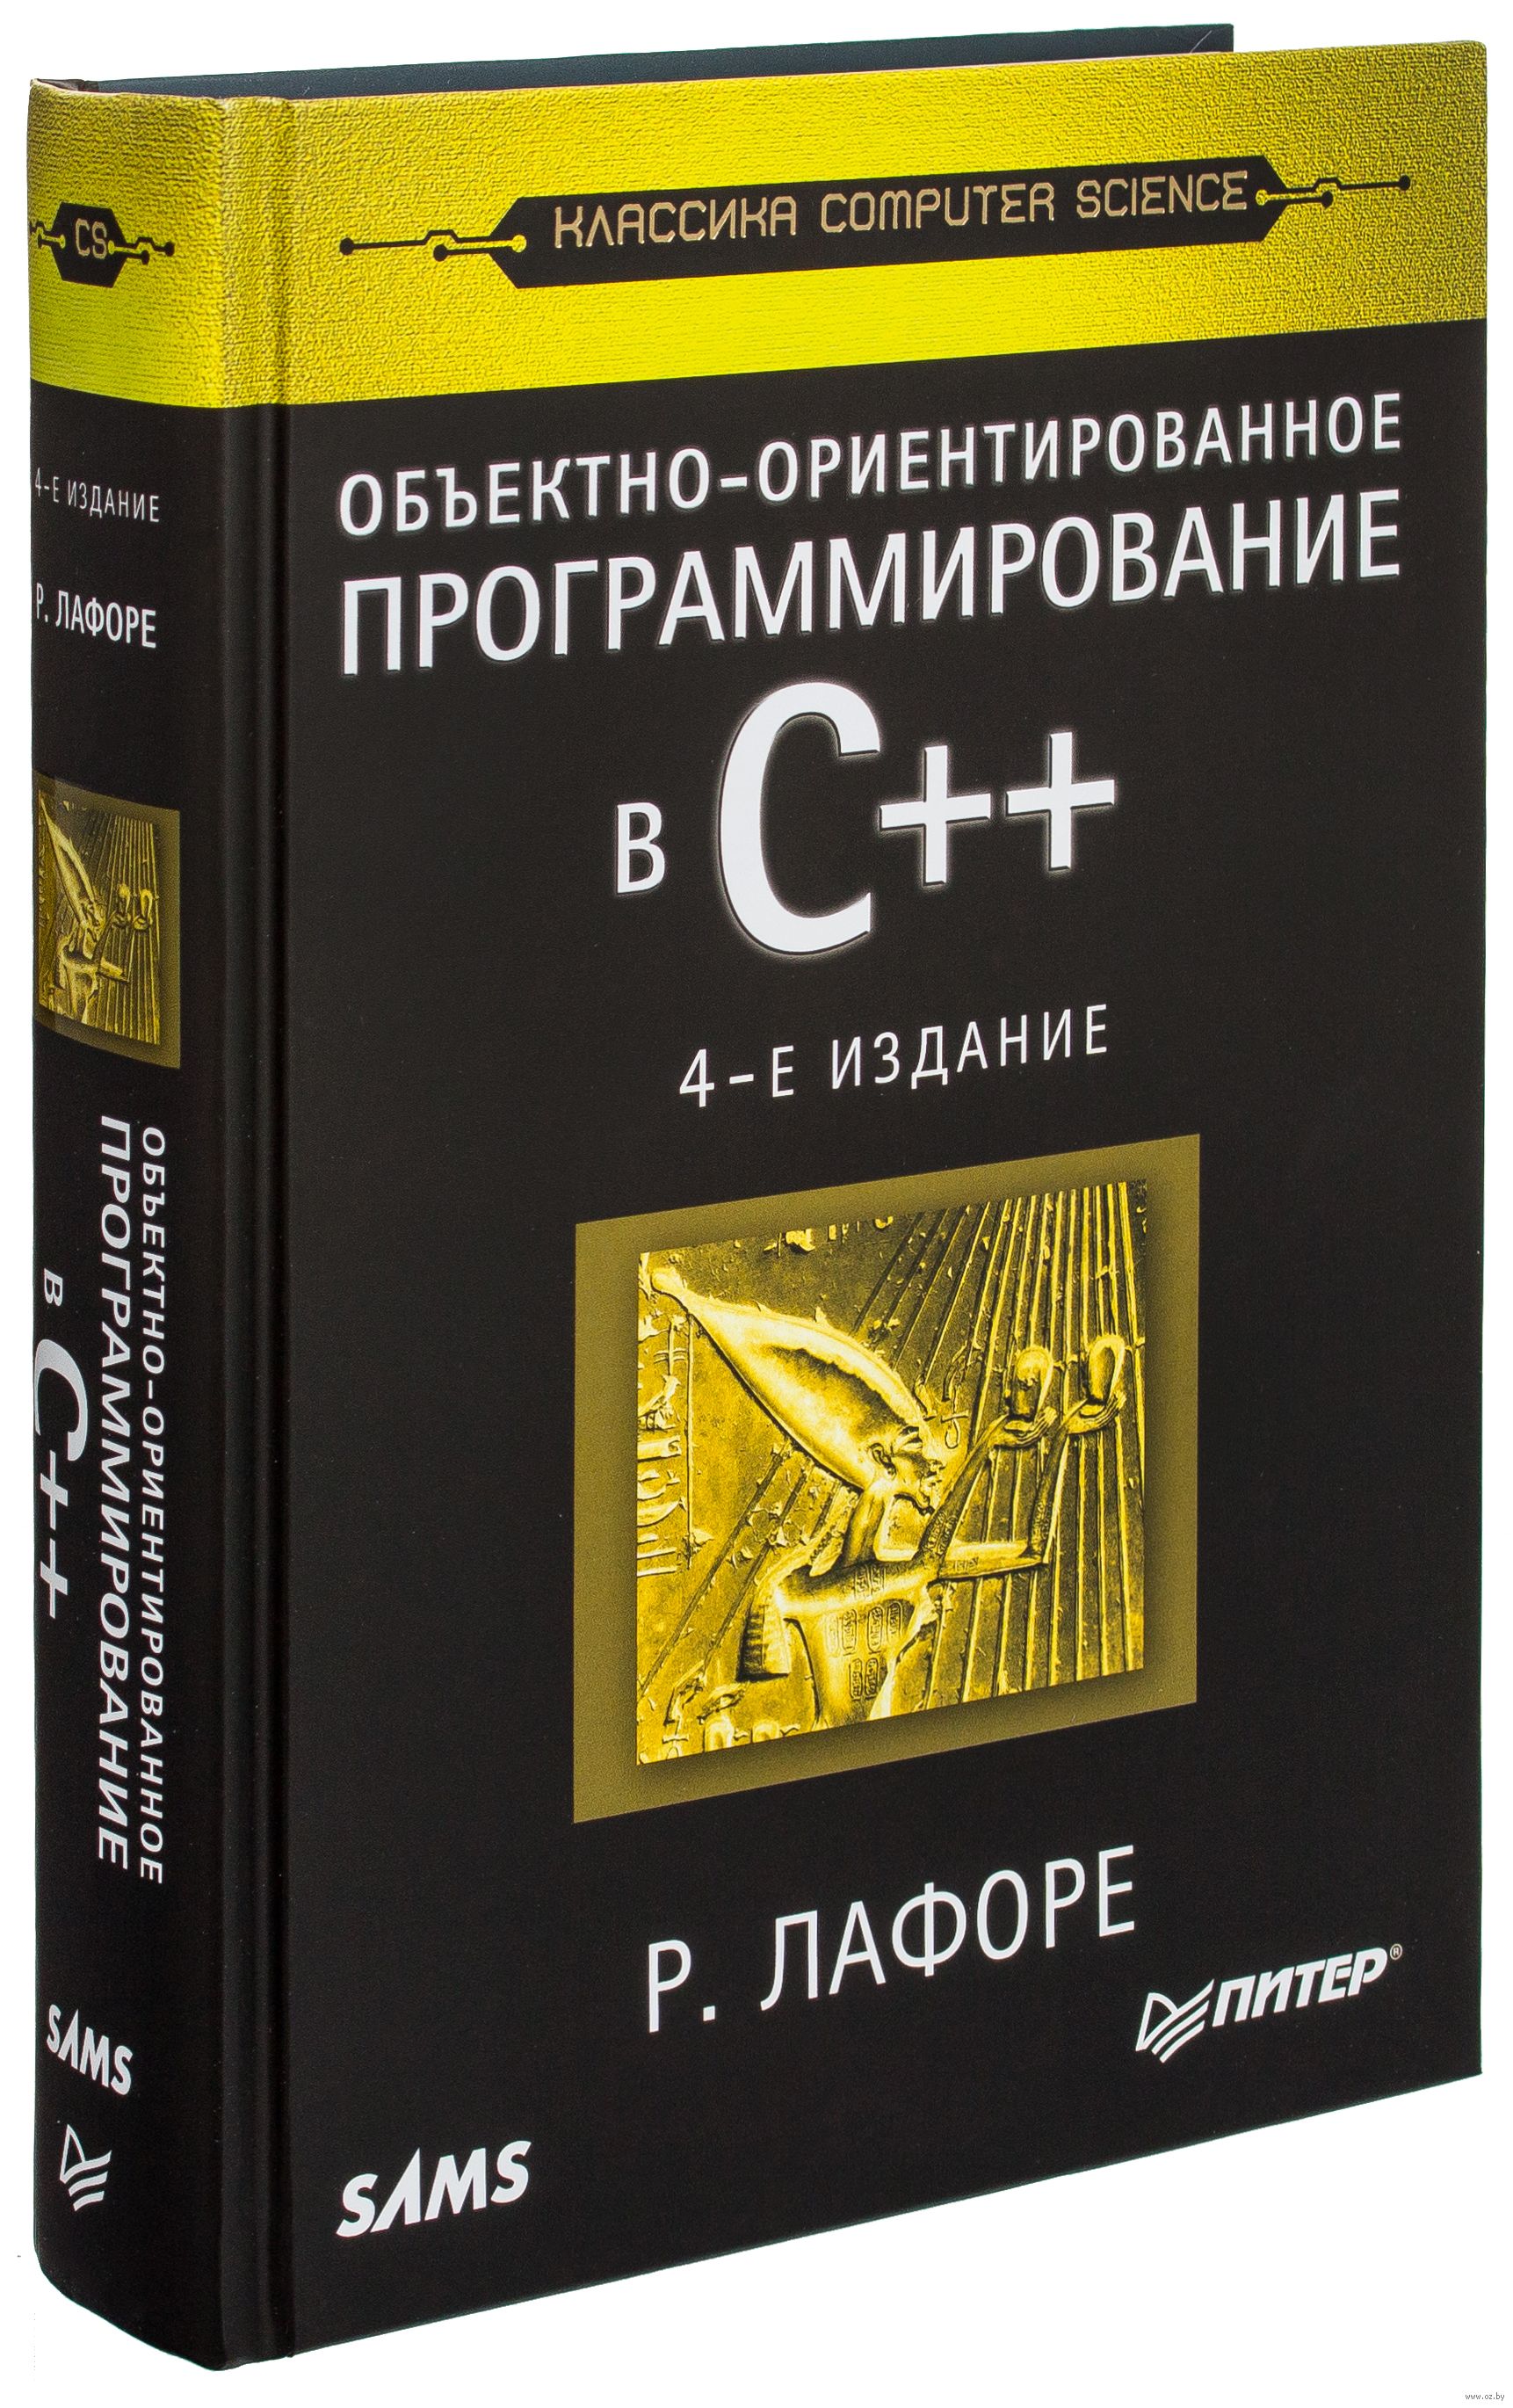 Книга языка c. Лафоре объектно-ориентированное программирование в c++. Программирование на c++ книга. Объектно-ориентированное программирование в с++ книга.